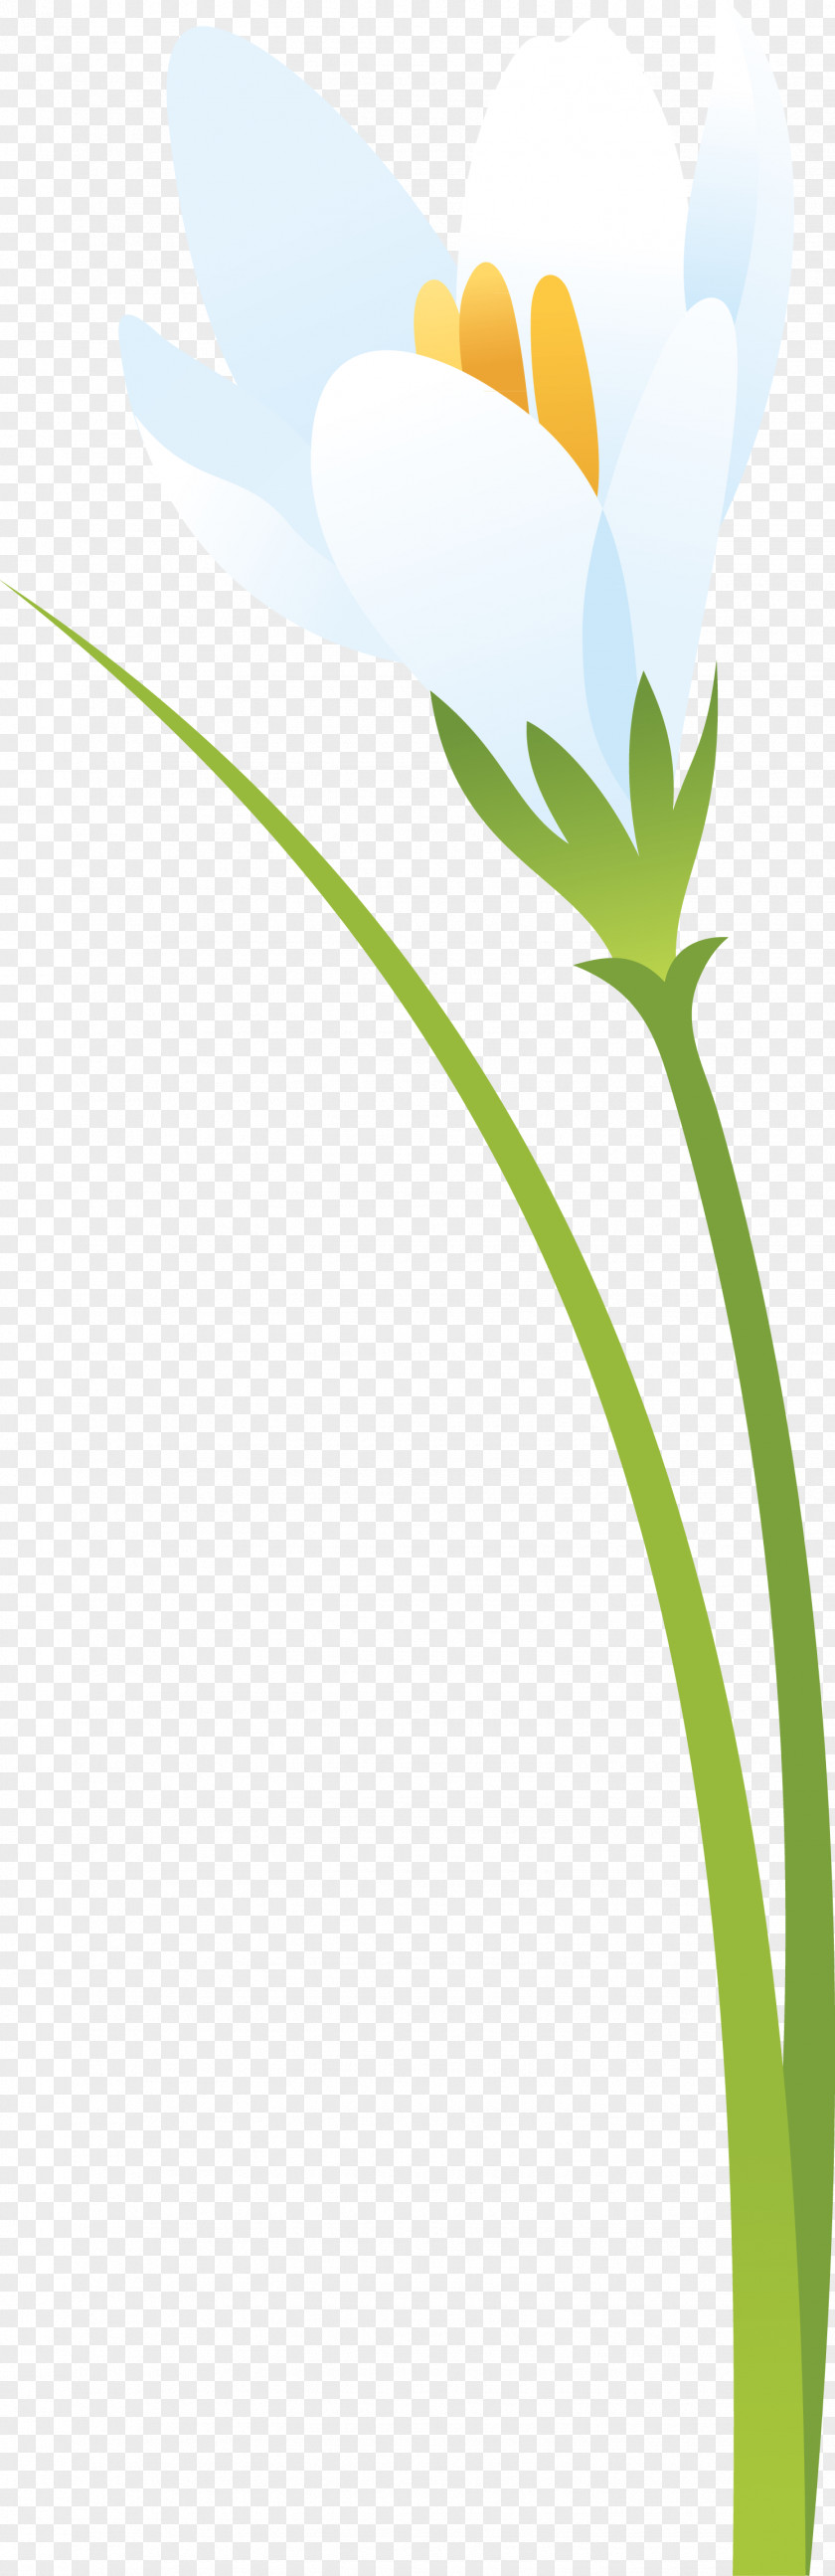 Crocus Flower Leaf Petal Plant Stem PNG